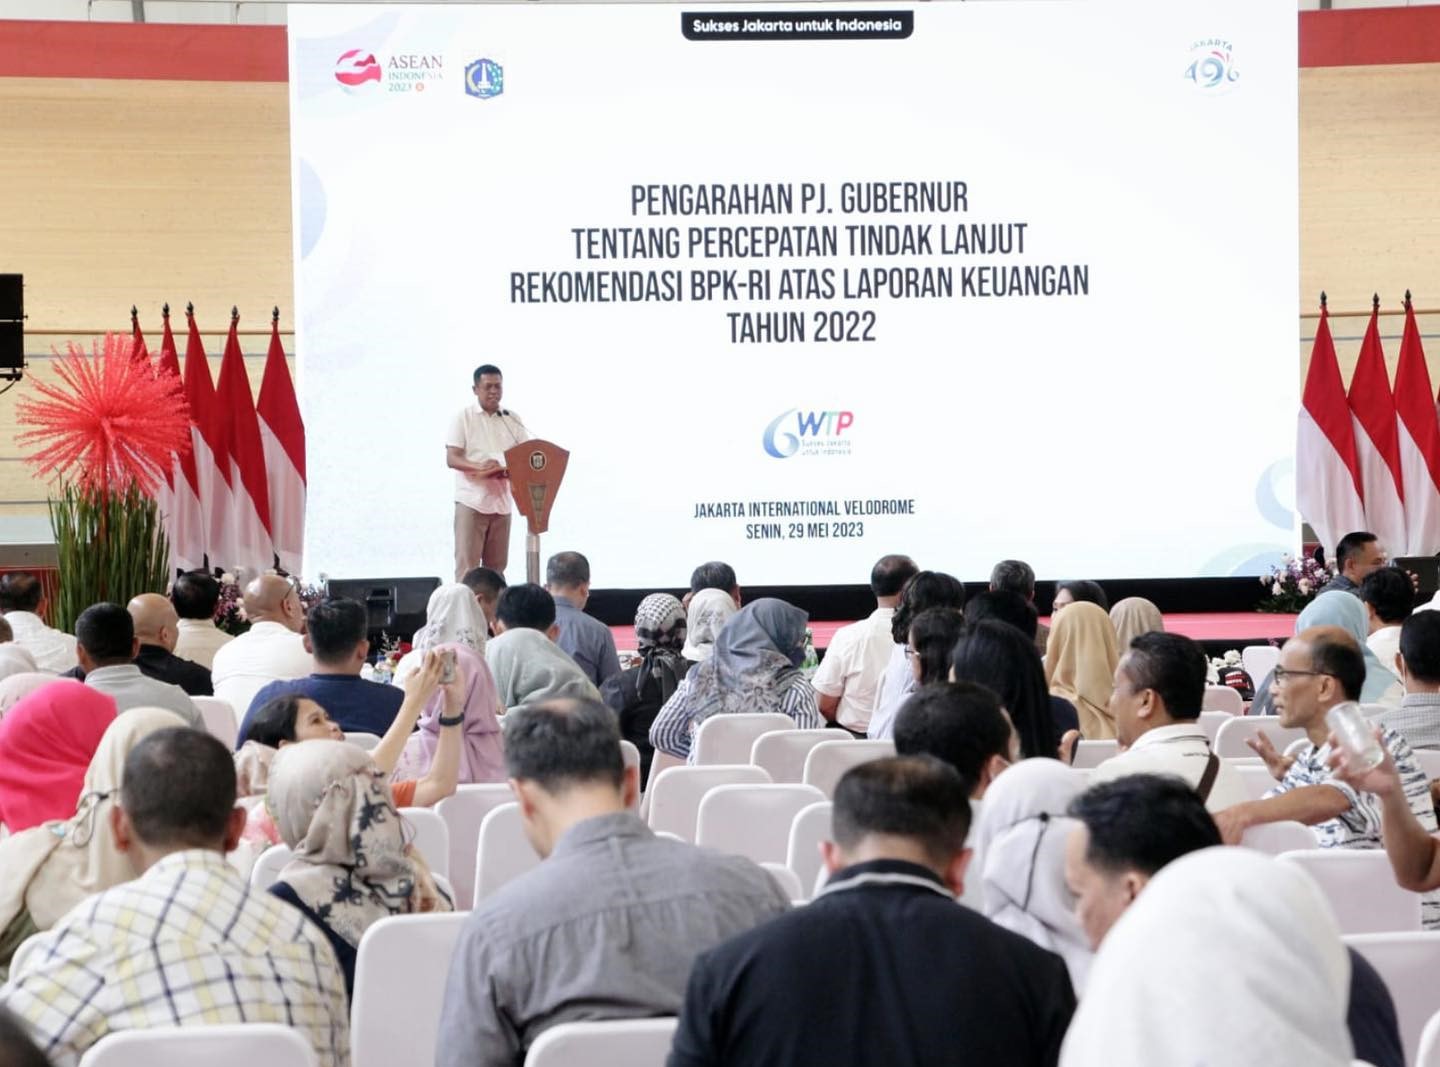 Pengarahan Penjabat (Pj) Gubernur DKI Jakarta tentang Percepatan Tindak Lanjut Rekomendasi BPK RI atas Laporan Keuangan Tahun 2022